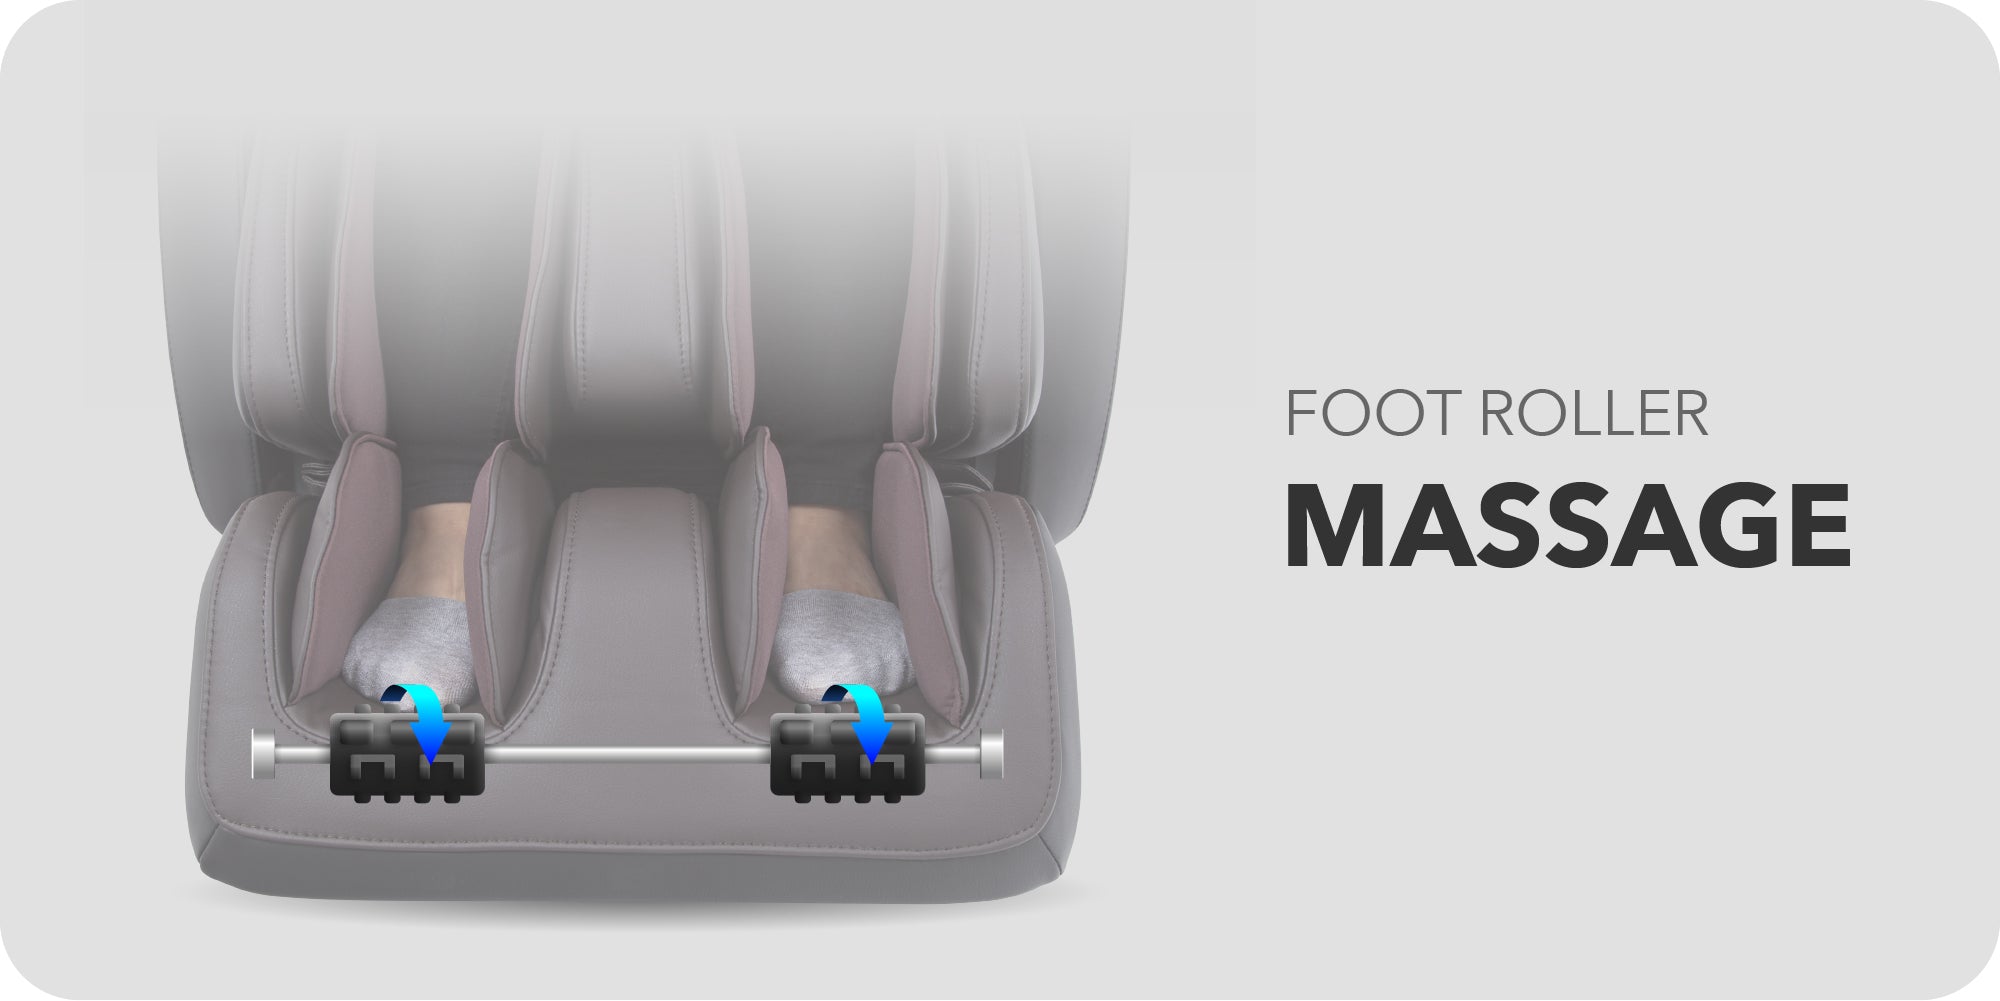 Foot roller massage